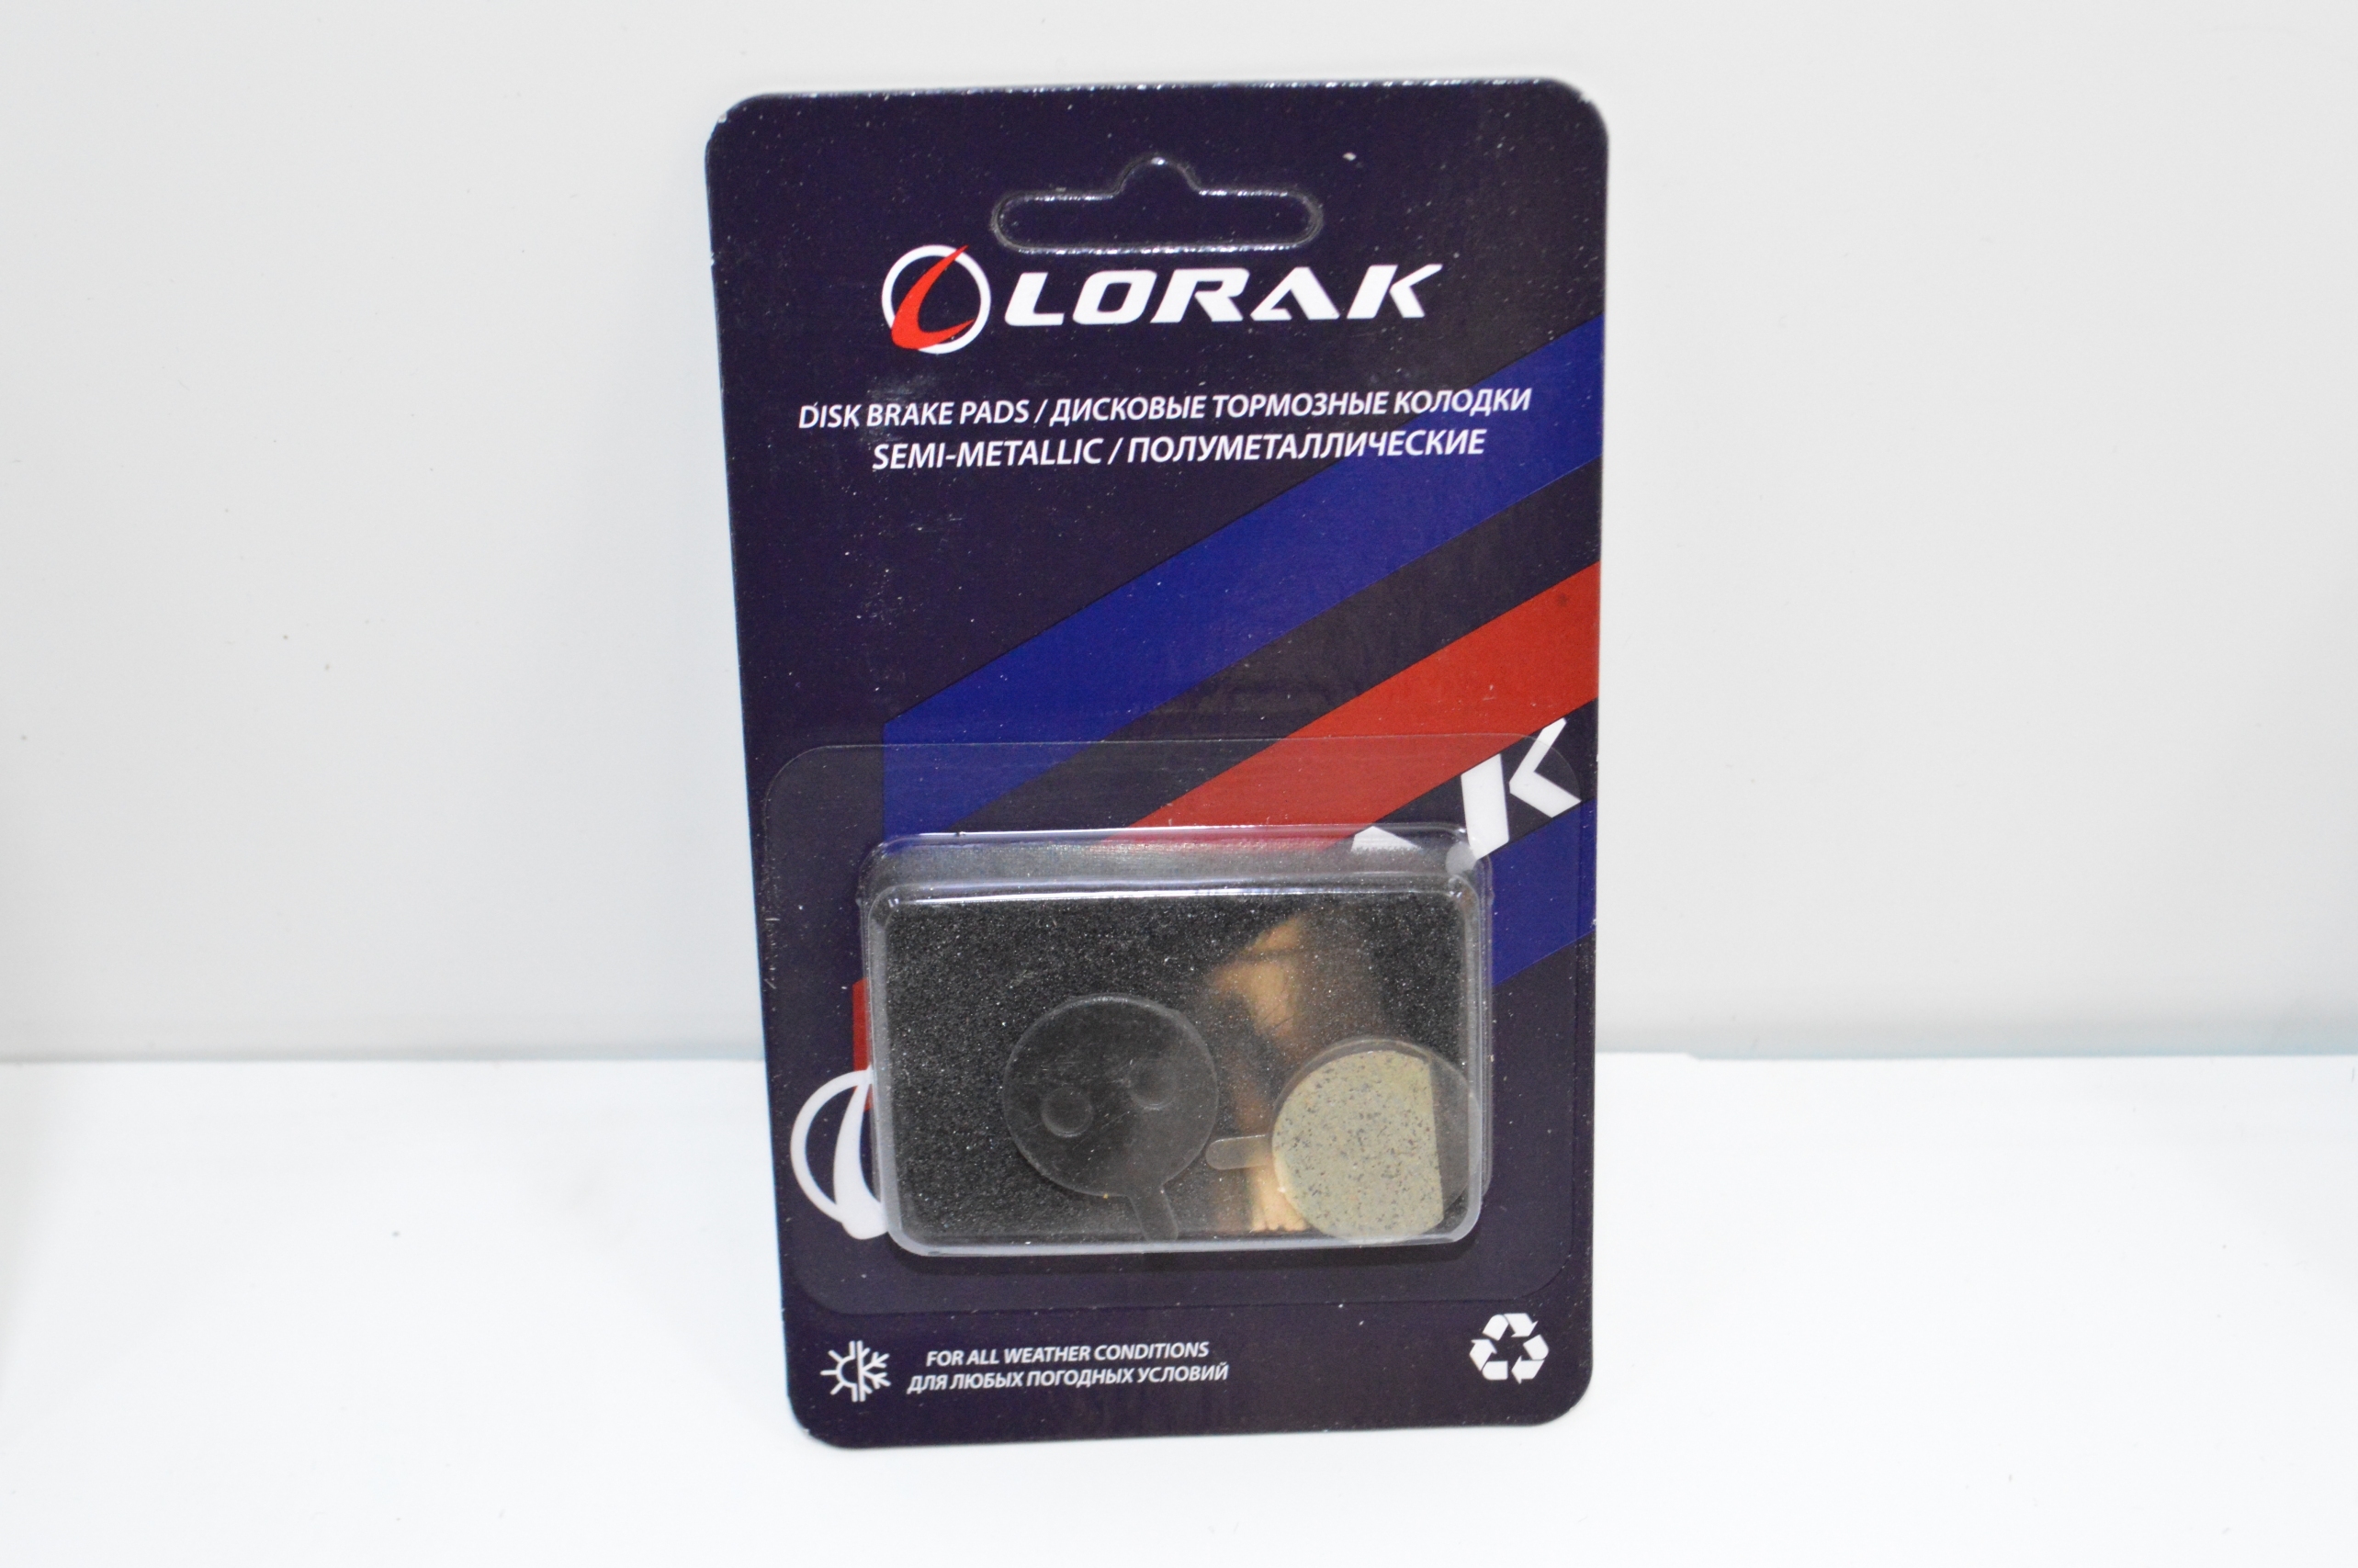 Колодка для диска Lorak P-08, код 40927